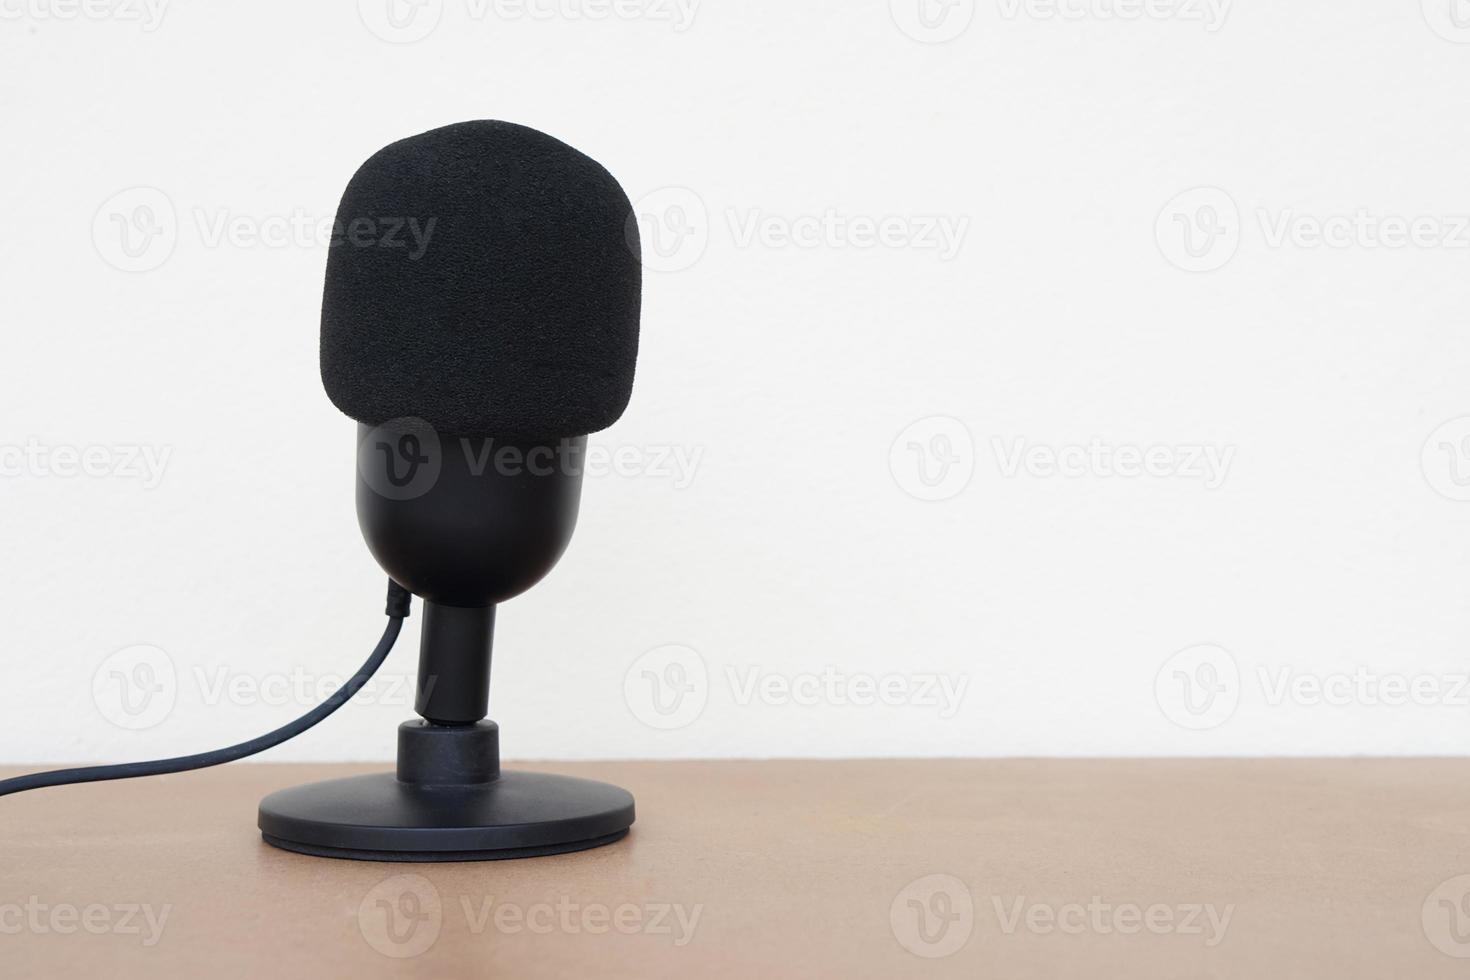 zwart microfoon. concept, technologie apparaat, microfoon USB, nuttig voor geluid, stem opnemen, leven streamen. Aan lucht, omroep. foto